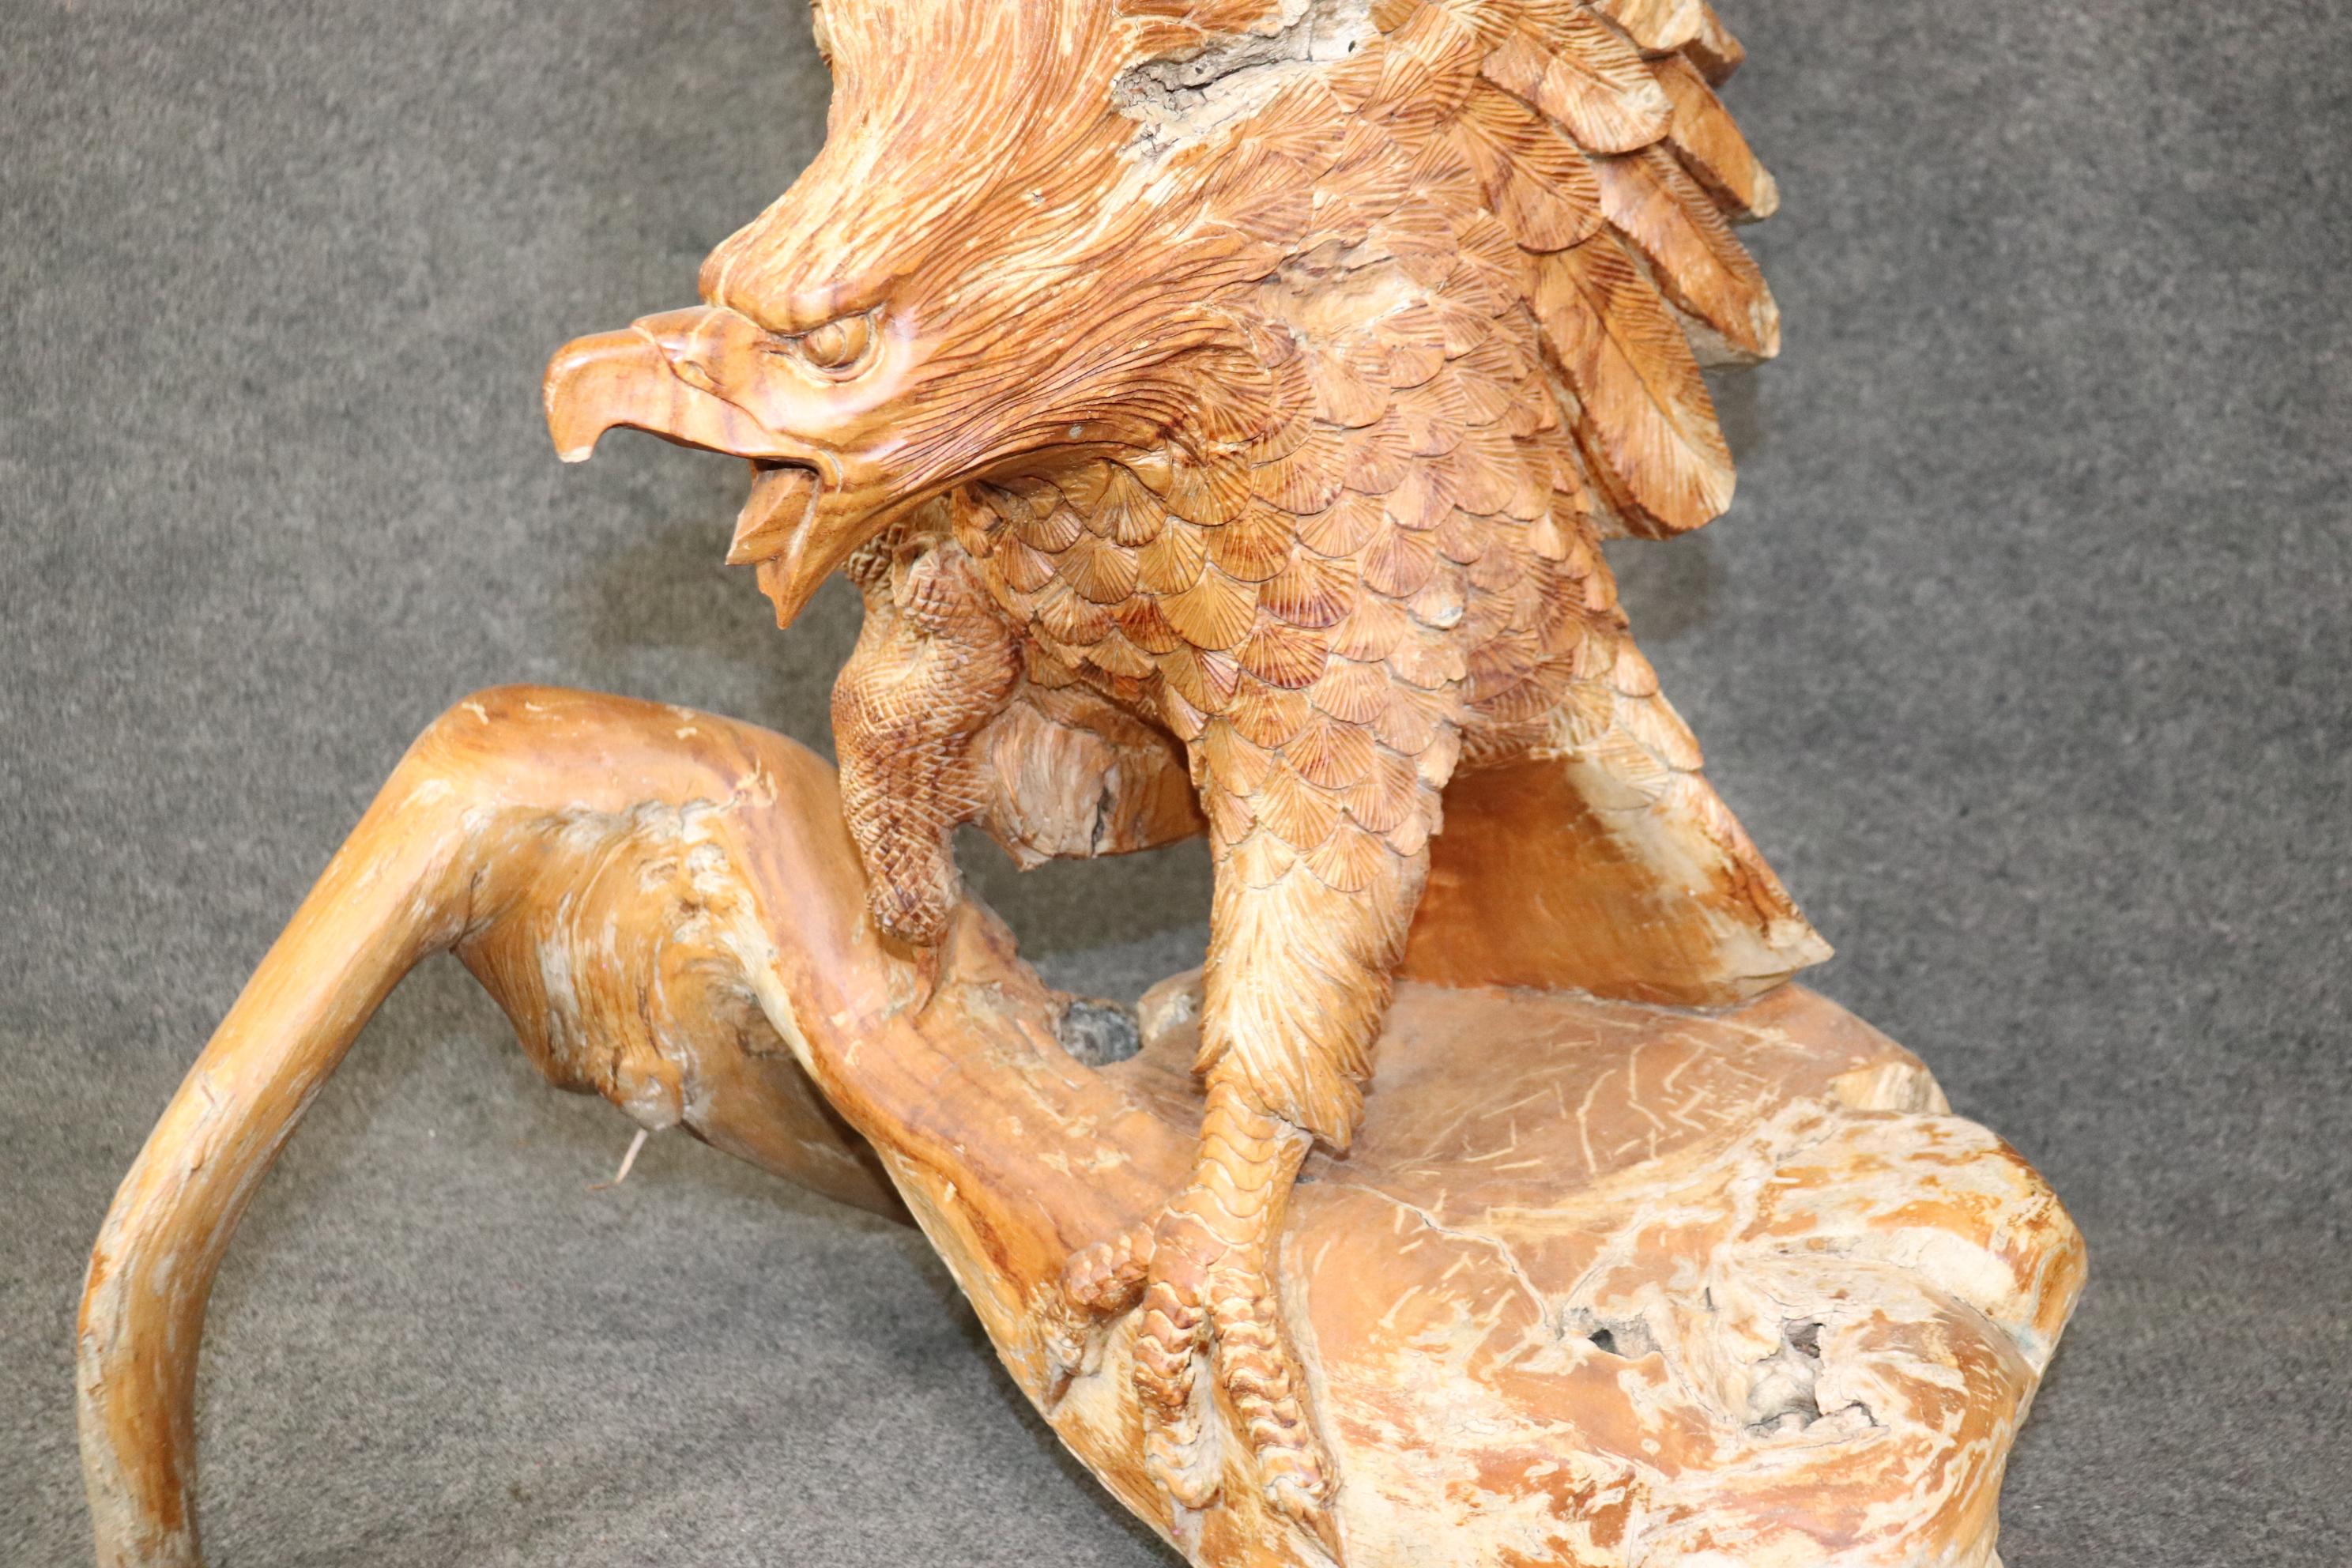 Il s'agit d'une seule pièce de bois, sculptée à la main de façon experte et incroyablement détaillée, avec des plumes, des serres, un bec et des ailes de style naturaliste. L'aigle à tête blanche vient d'atterrir et semble être un oiseau vivant en